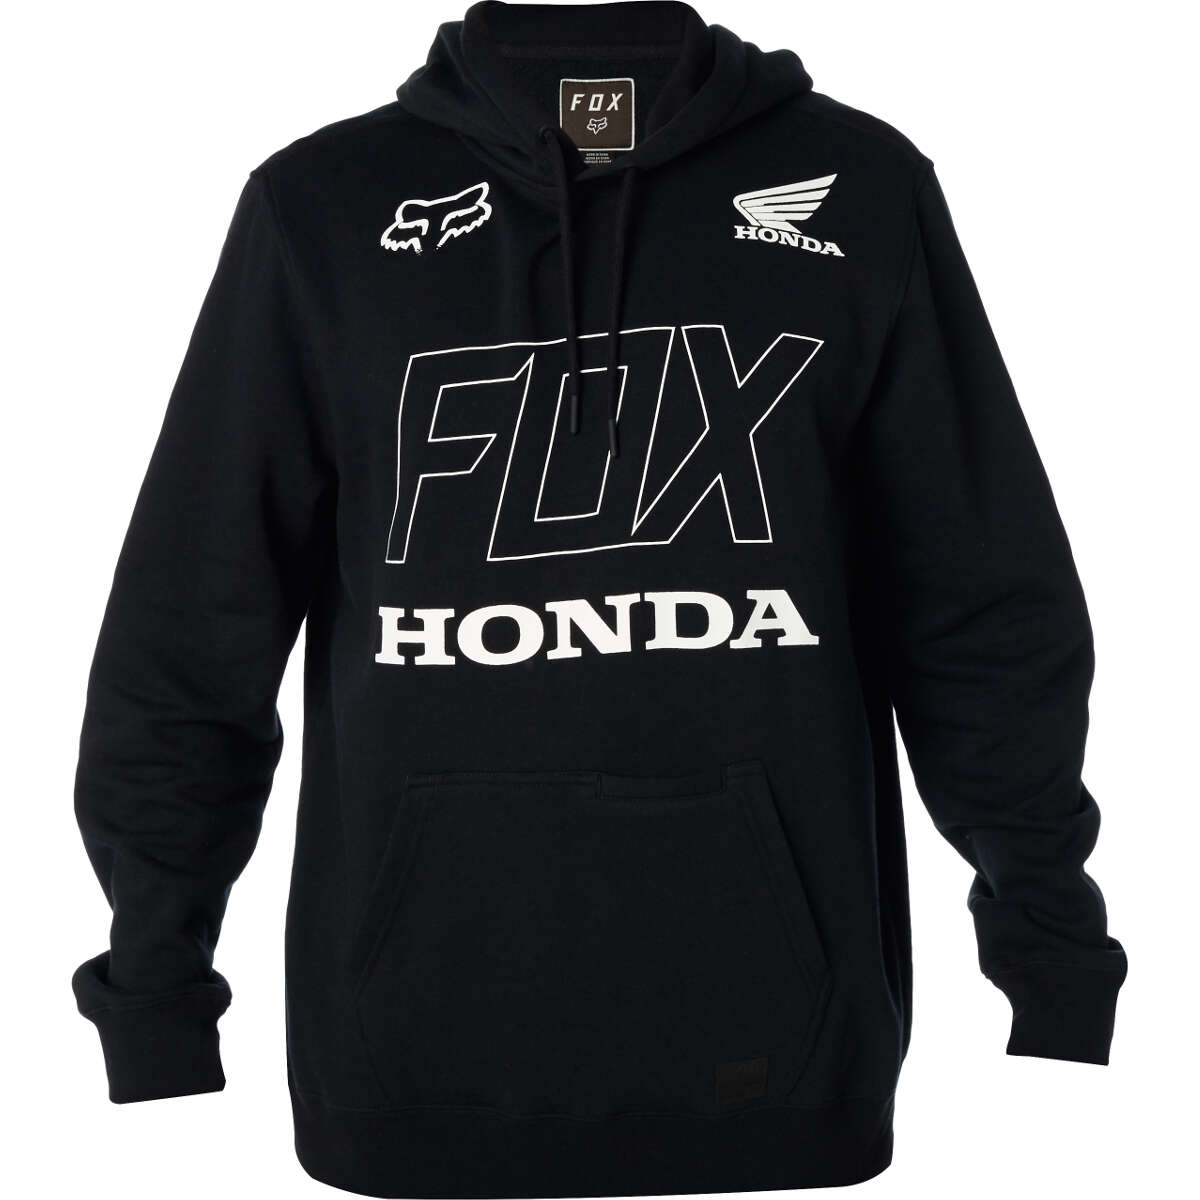 Fox Felpa Honda Black